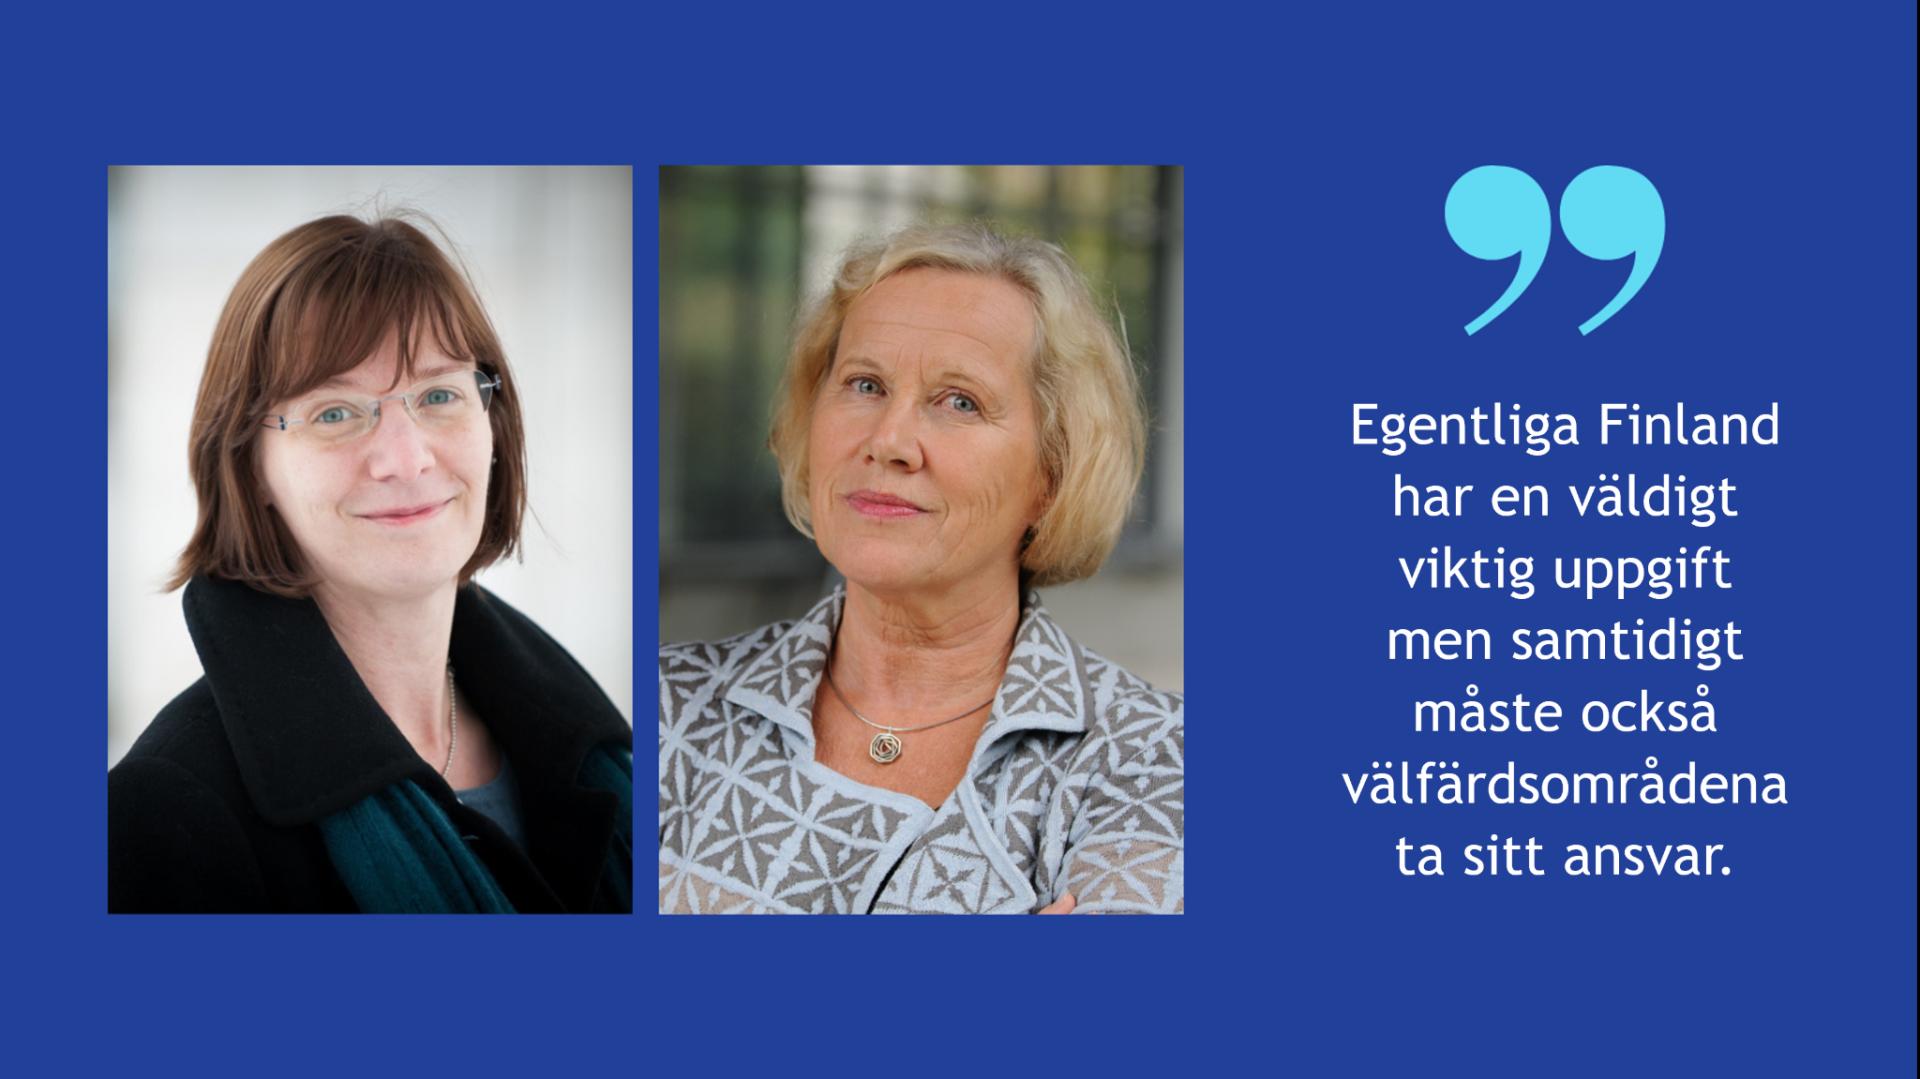 På blå bakgrund en bild på Mikaela Björklund och Lisbeth Hemgård. Bredvid bilderna finns följande citat: Egentliga Finland har en väldigt viktig uppgift         men samtidigt måste också välfärdsområdena ta sitt ansvar.